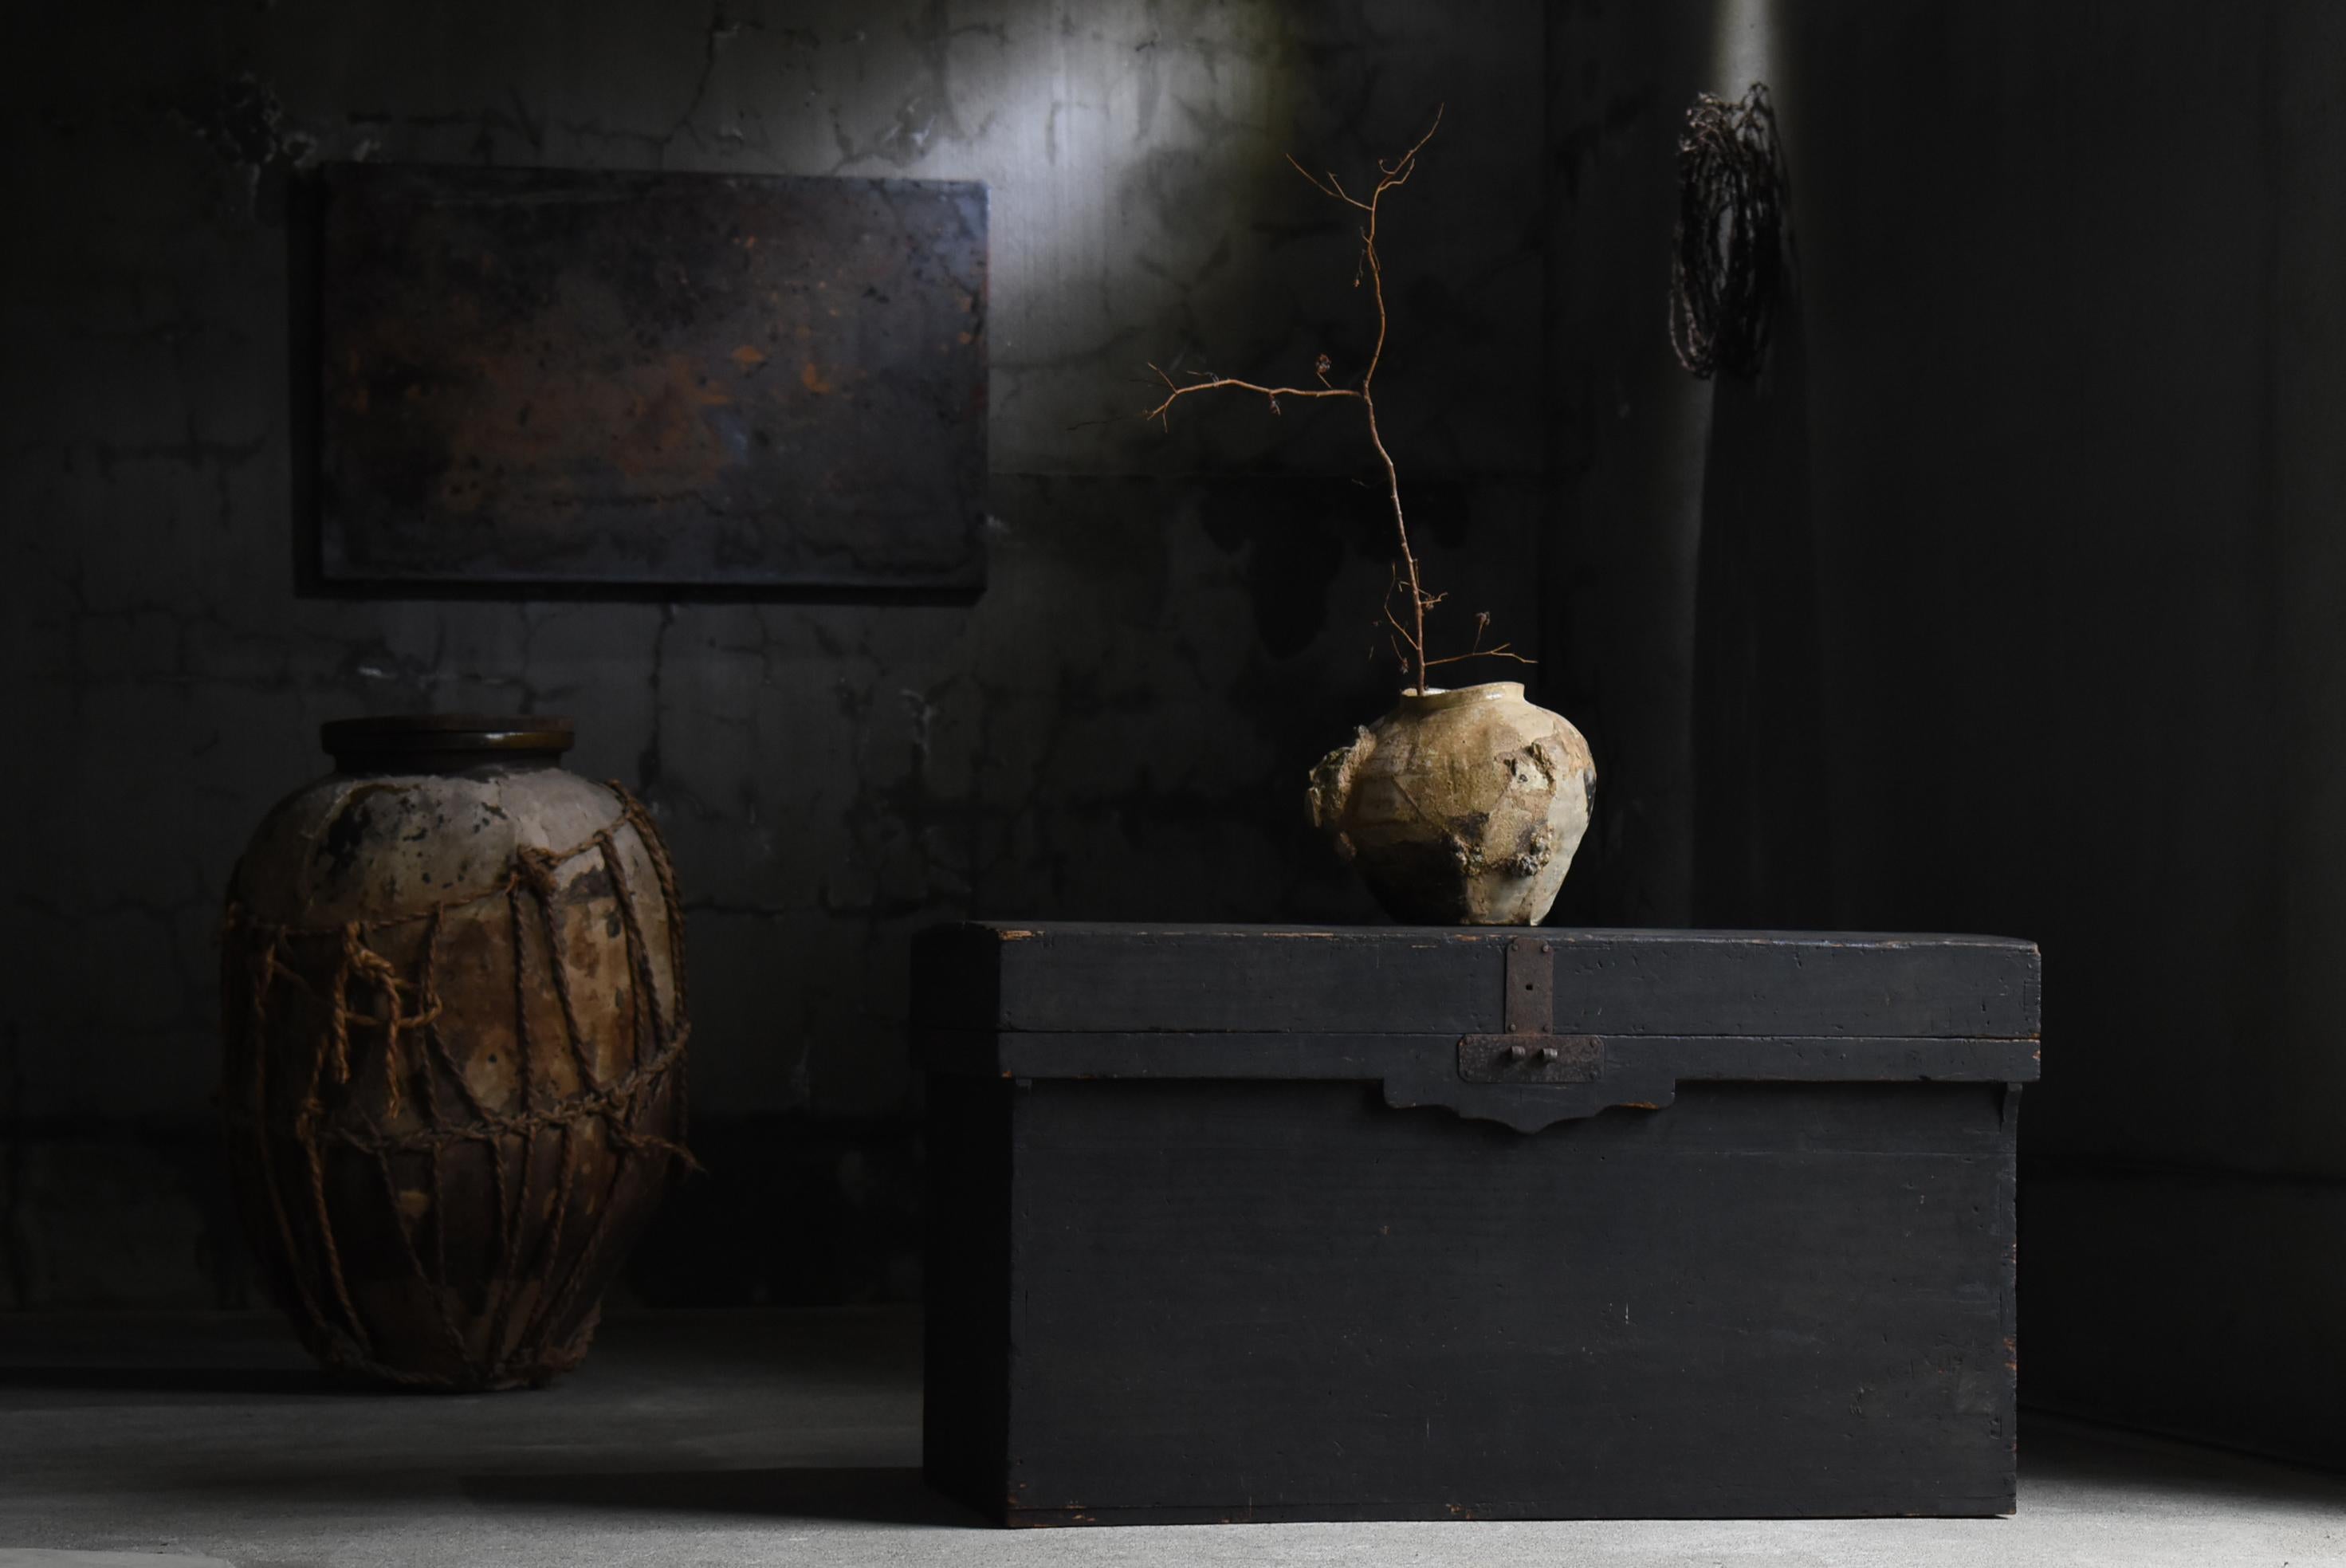 Très ancien buffet japonais (Tansu).
Fabriqué pendant la période Meiji (1860-1900).
Le matériau utilisé est le bois de paulownia, un matériau de haute qualité.

Il s'agit d'un type de boîte doté d'une grande capacité de stockage.
Pas de décoration